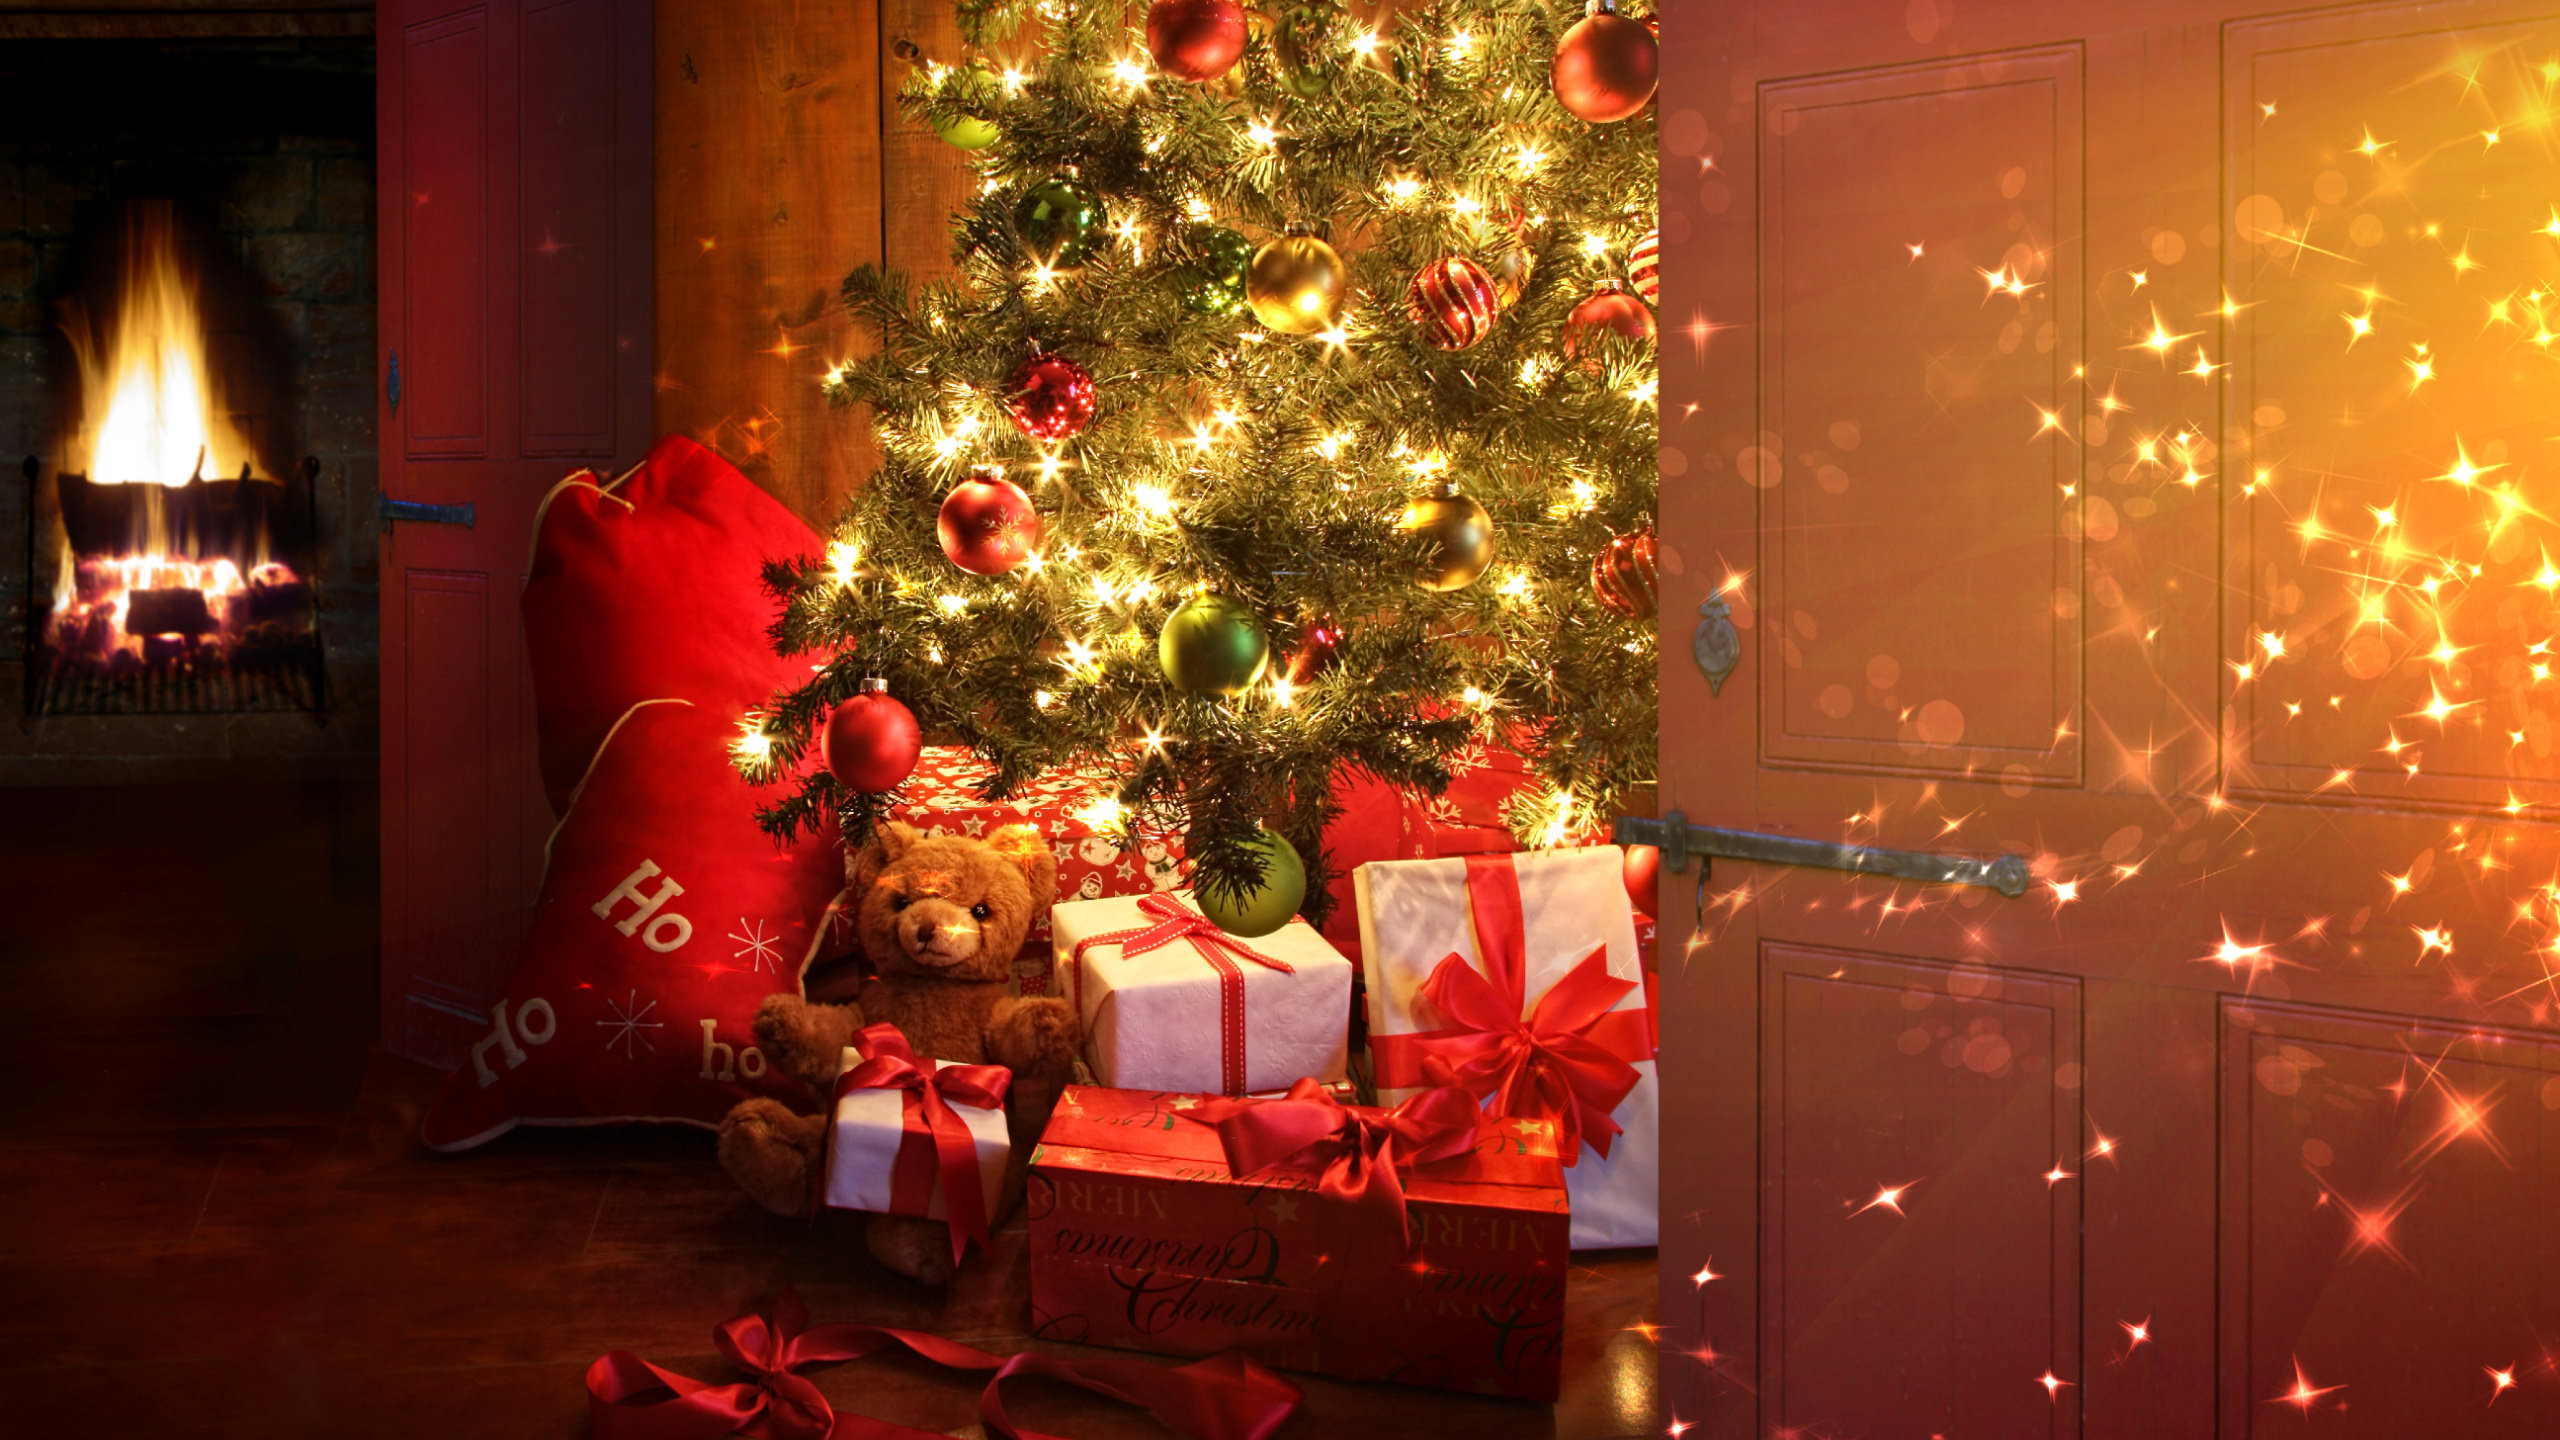 Le Jour De Noël, Arbre de Noël, Décoration de Noël, Ornement de Noël, Les Lumières de Noël. Wallpaper in 2560x1440 Resolution